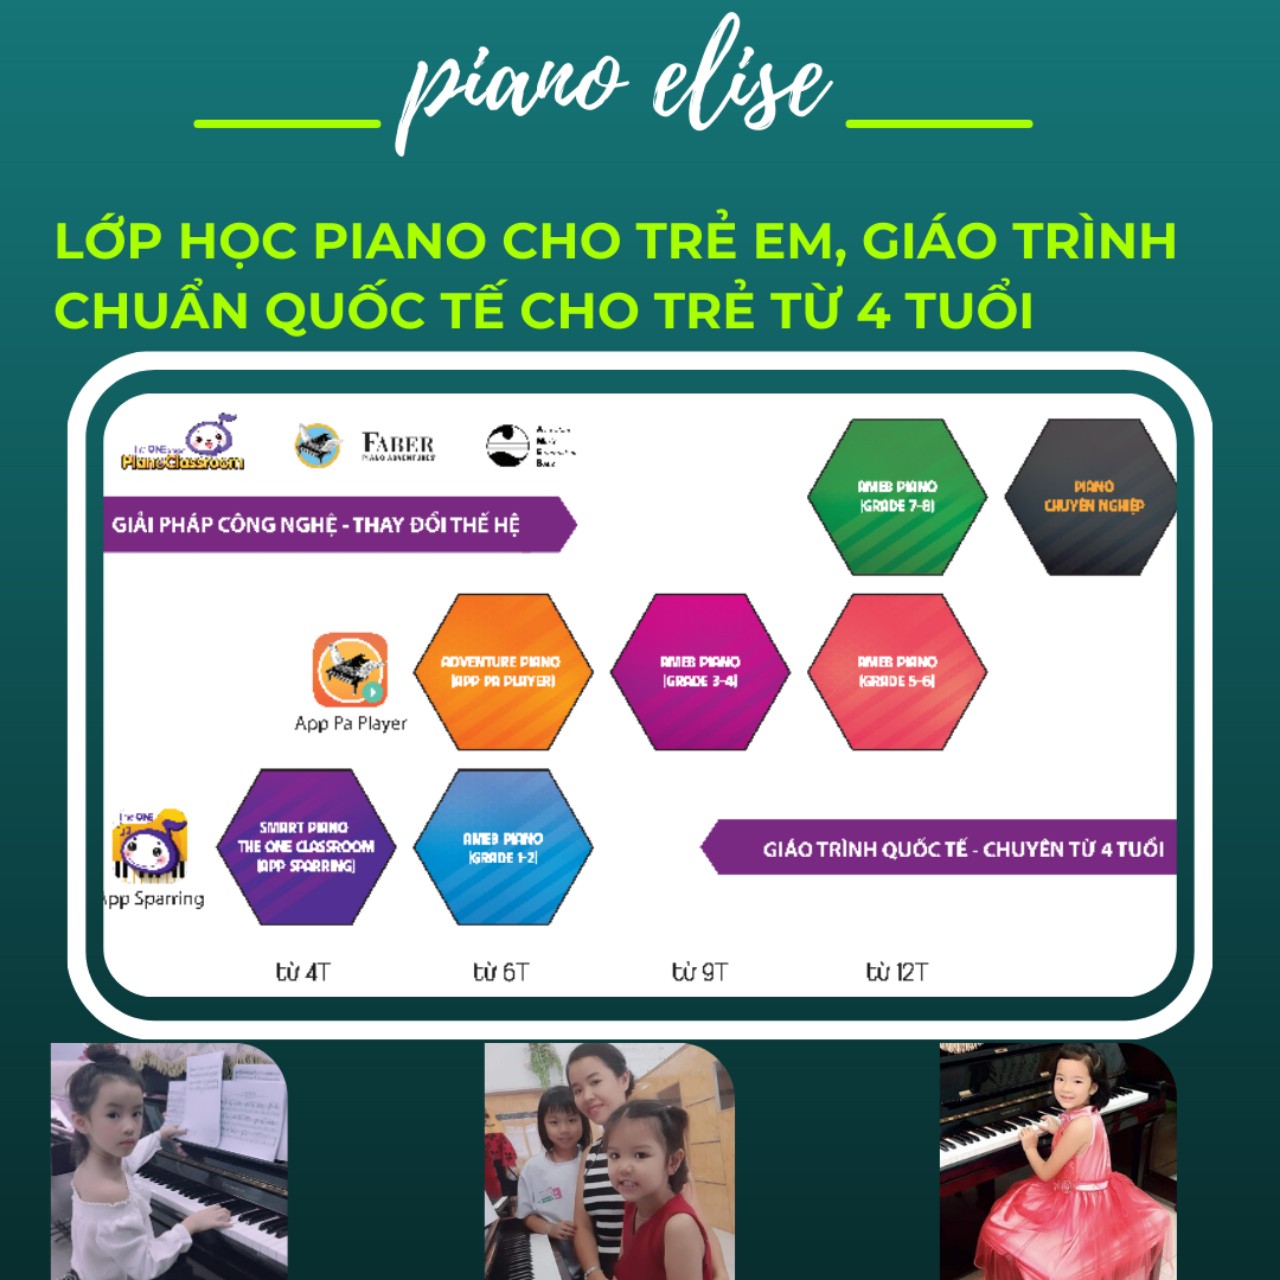 Học piano online tại PIANO ELISE đúng phương pháp, đúng lộ trình